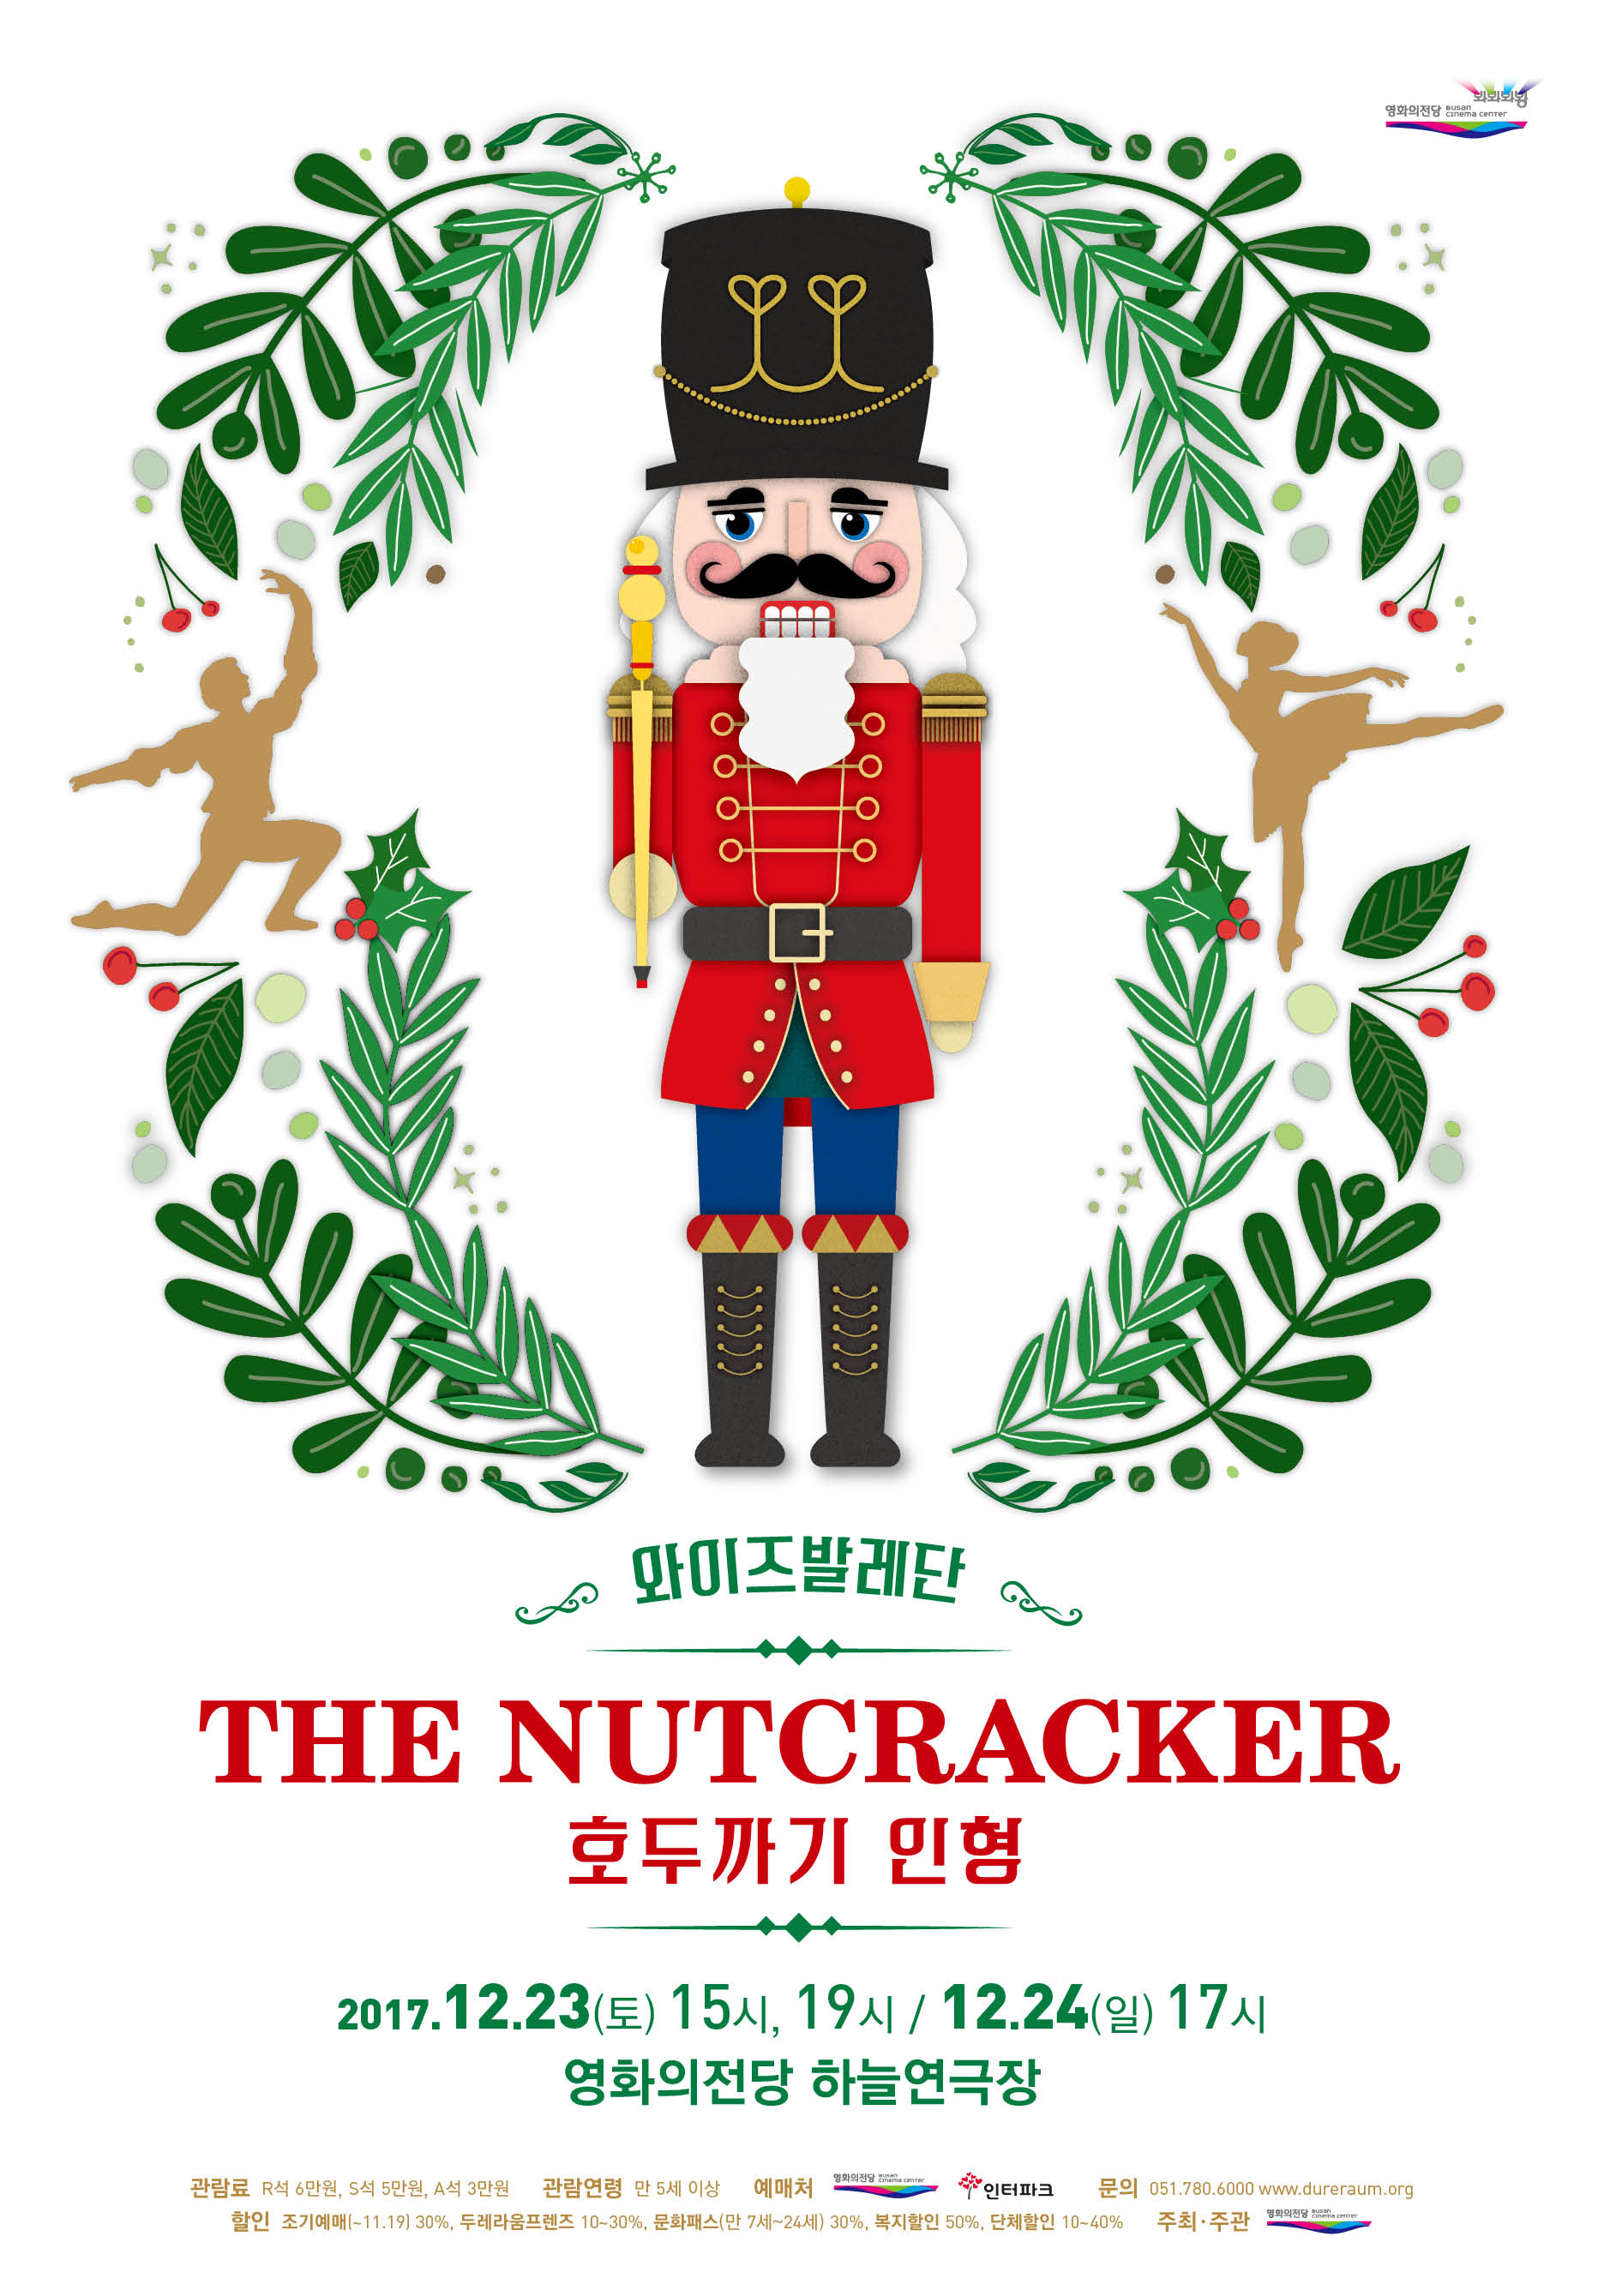 와이즈발레단 THE NUTCRACKER 호두까기 인형 2017.12.23(토) 15시, 19시 /12.24(일) 17시 영화의전당 하늘연극장, 호두까기 인형 포스터